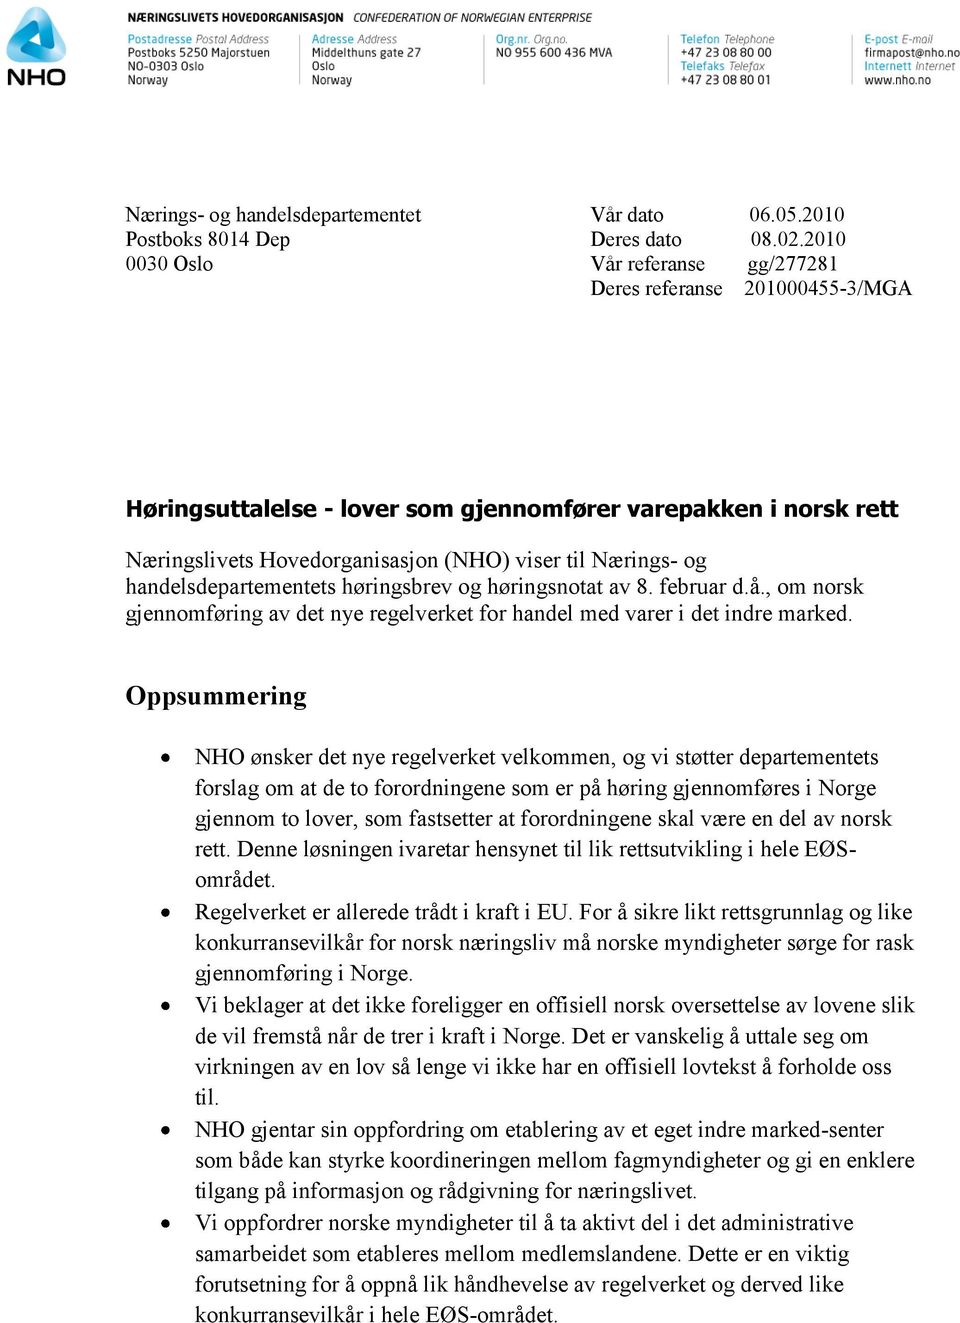 handelsdepartementets høringsbrev og høringsnotat av 8. februar d.å., om norsk gjennomføring av det nye regelverket for handel med varer i det indre marked.